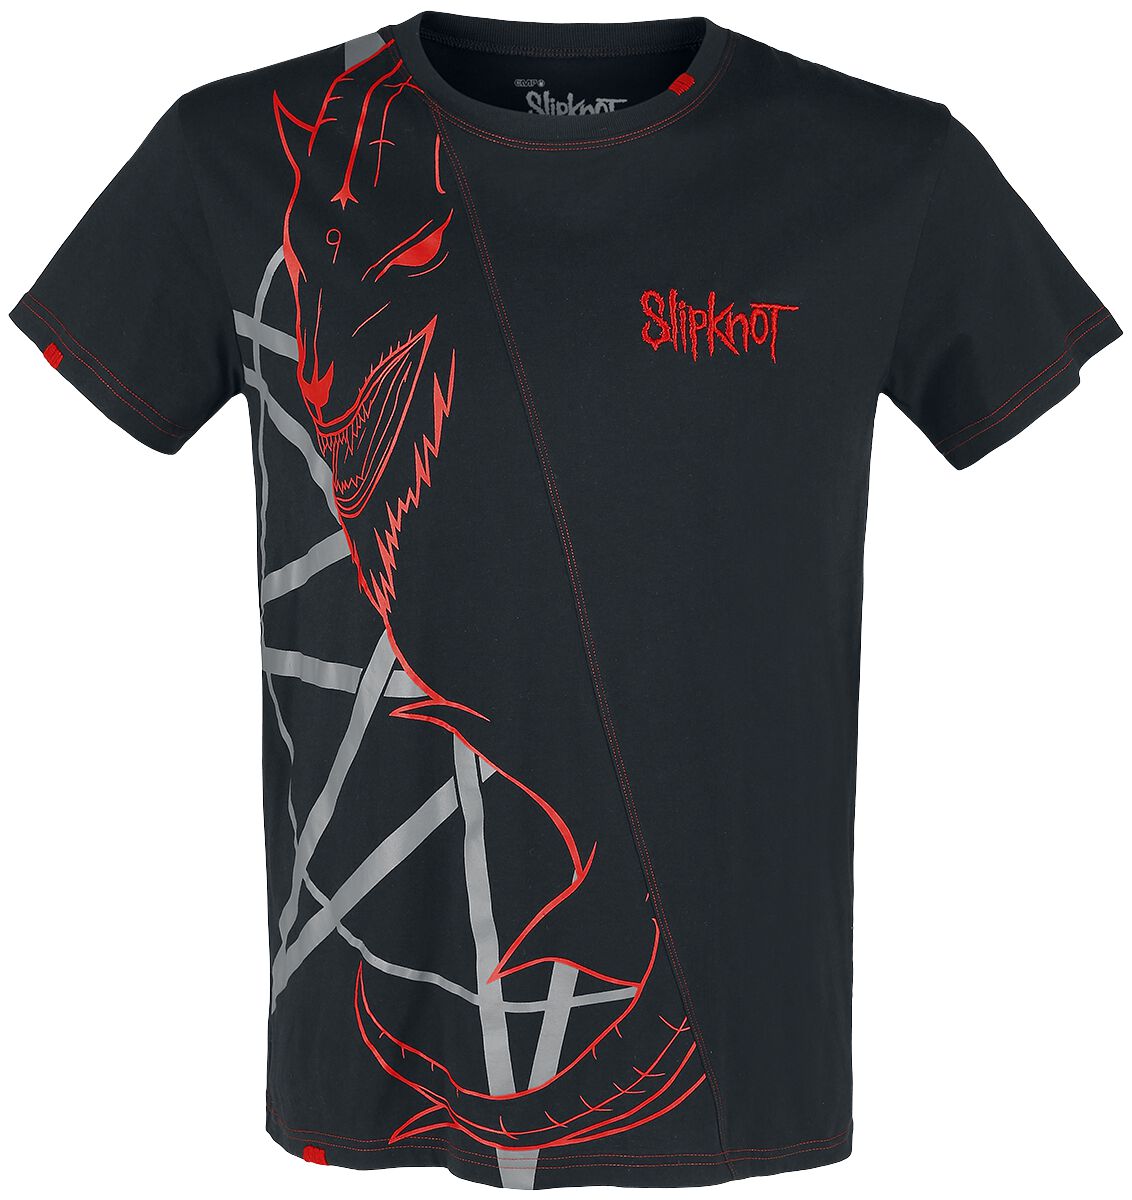 Slipknot T-Shirt - EMP Signature Collection - S bis 5XL - für Männer - Größe XXL - schwarz/rot  - EMP exklusives Merchandise!